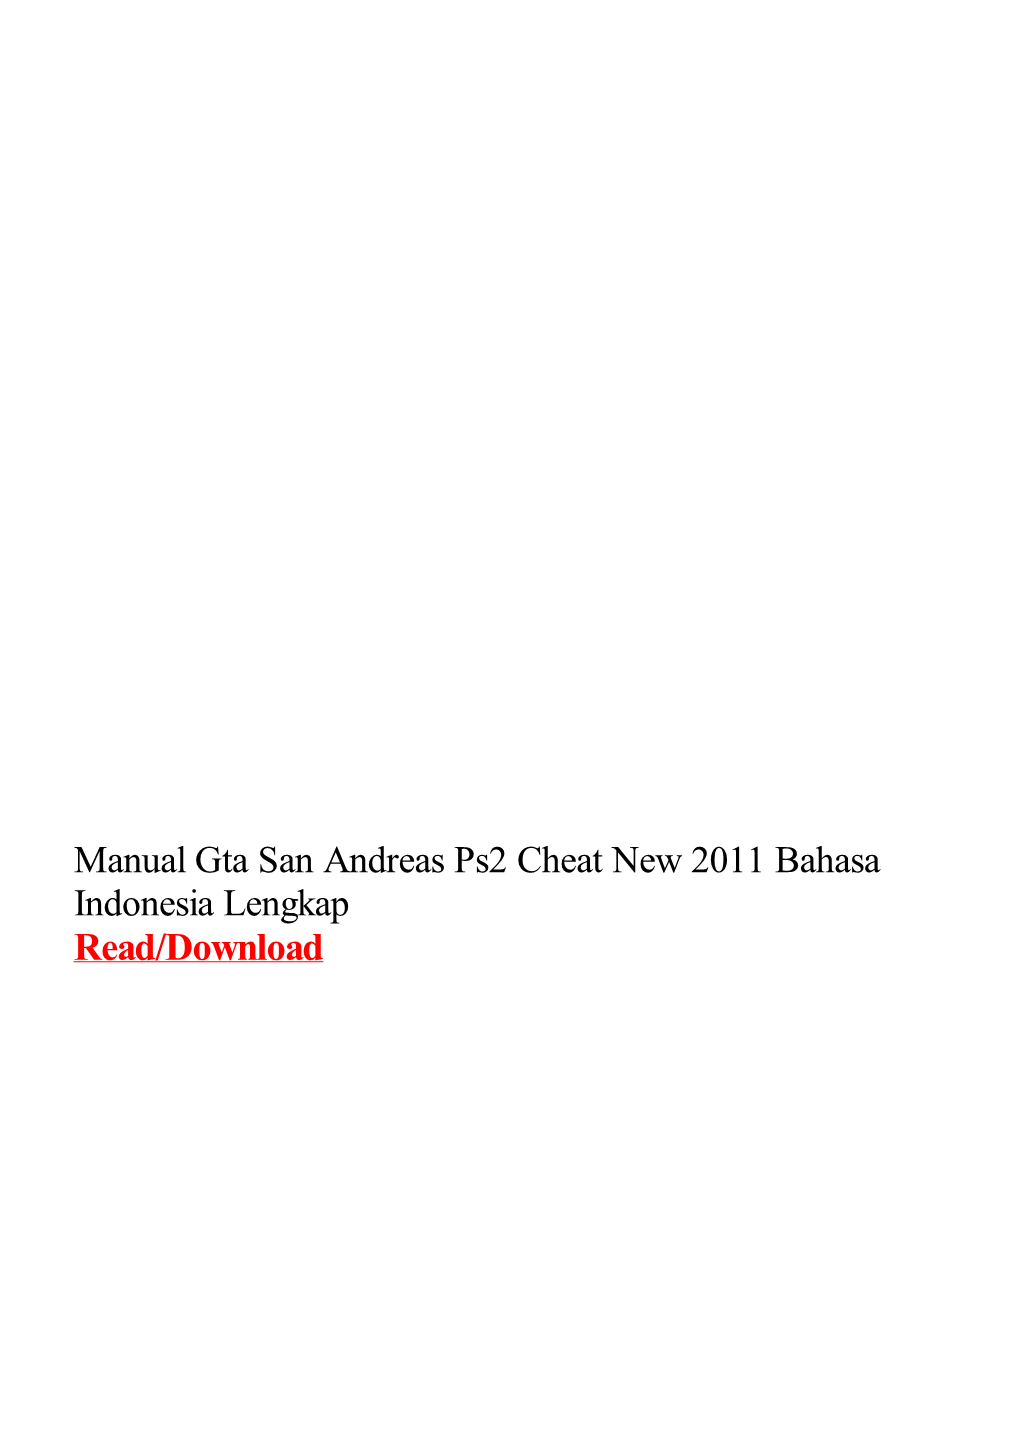 Manual Gta San Andreas Ps2 Cheat New 2011 Bahasa Indonesia Lengkap